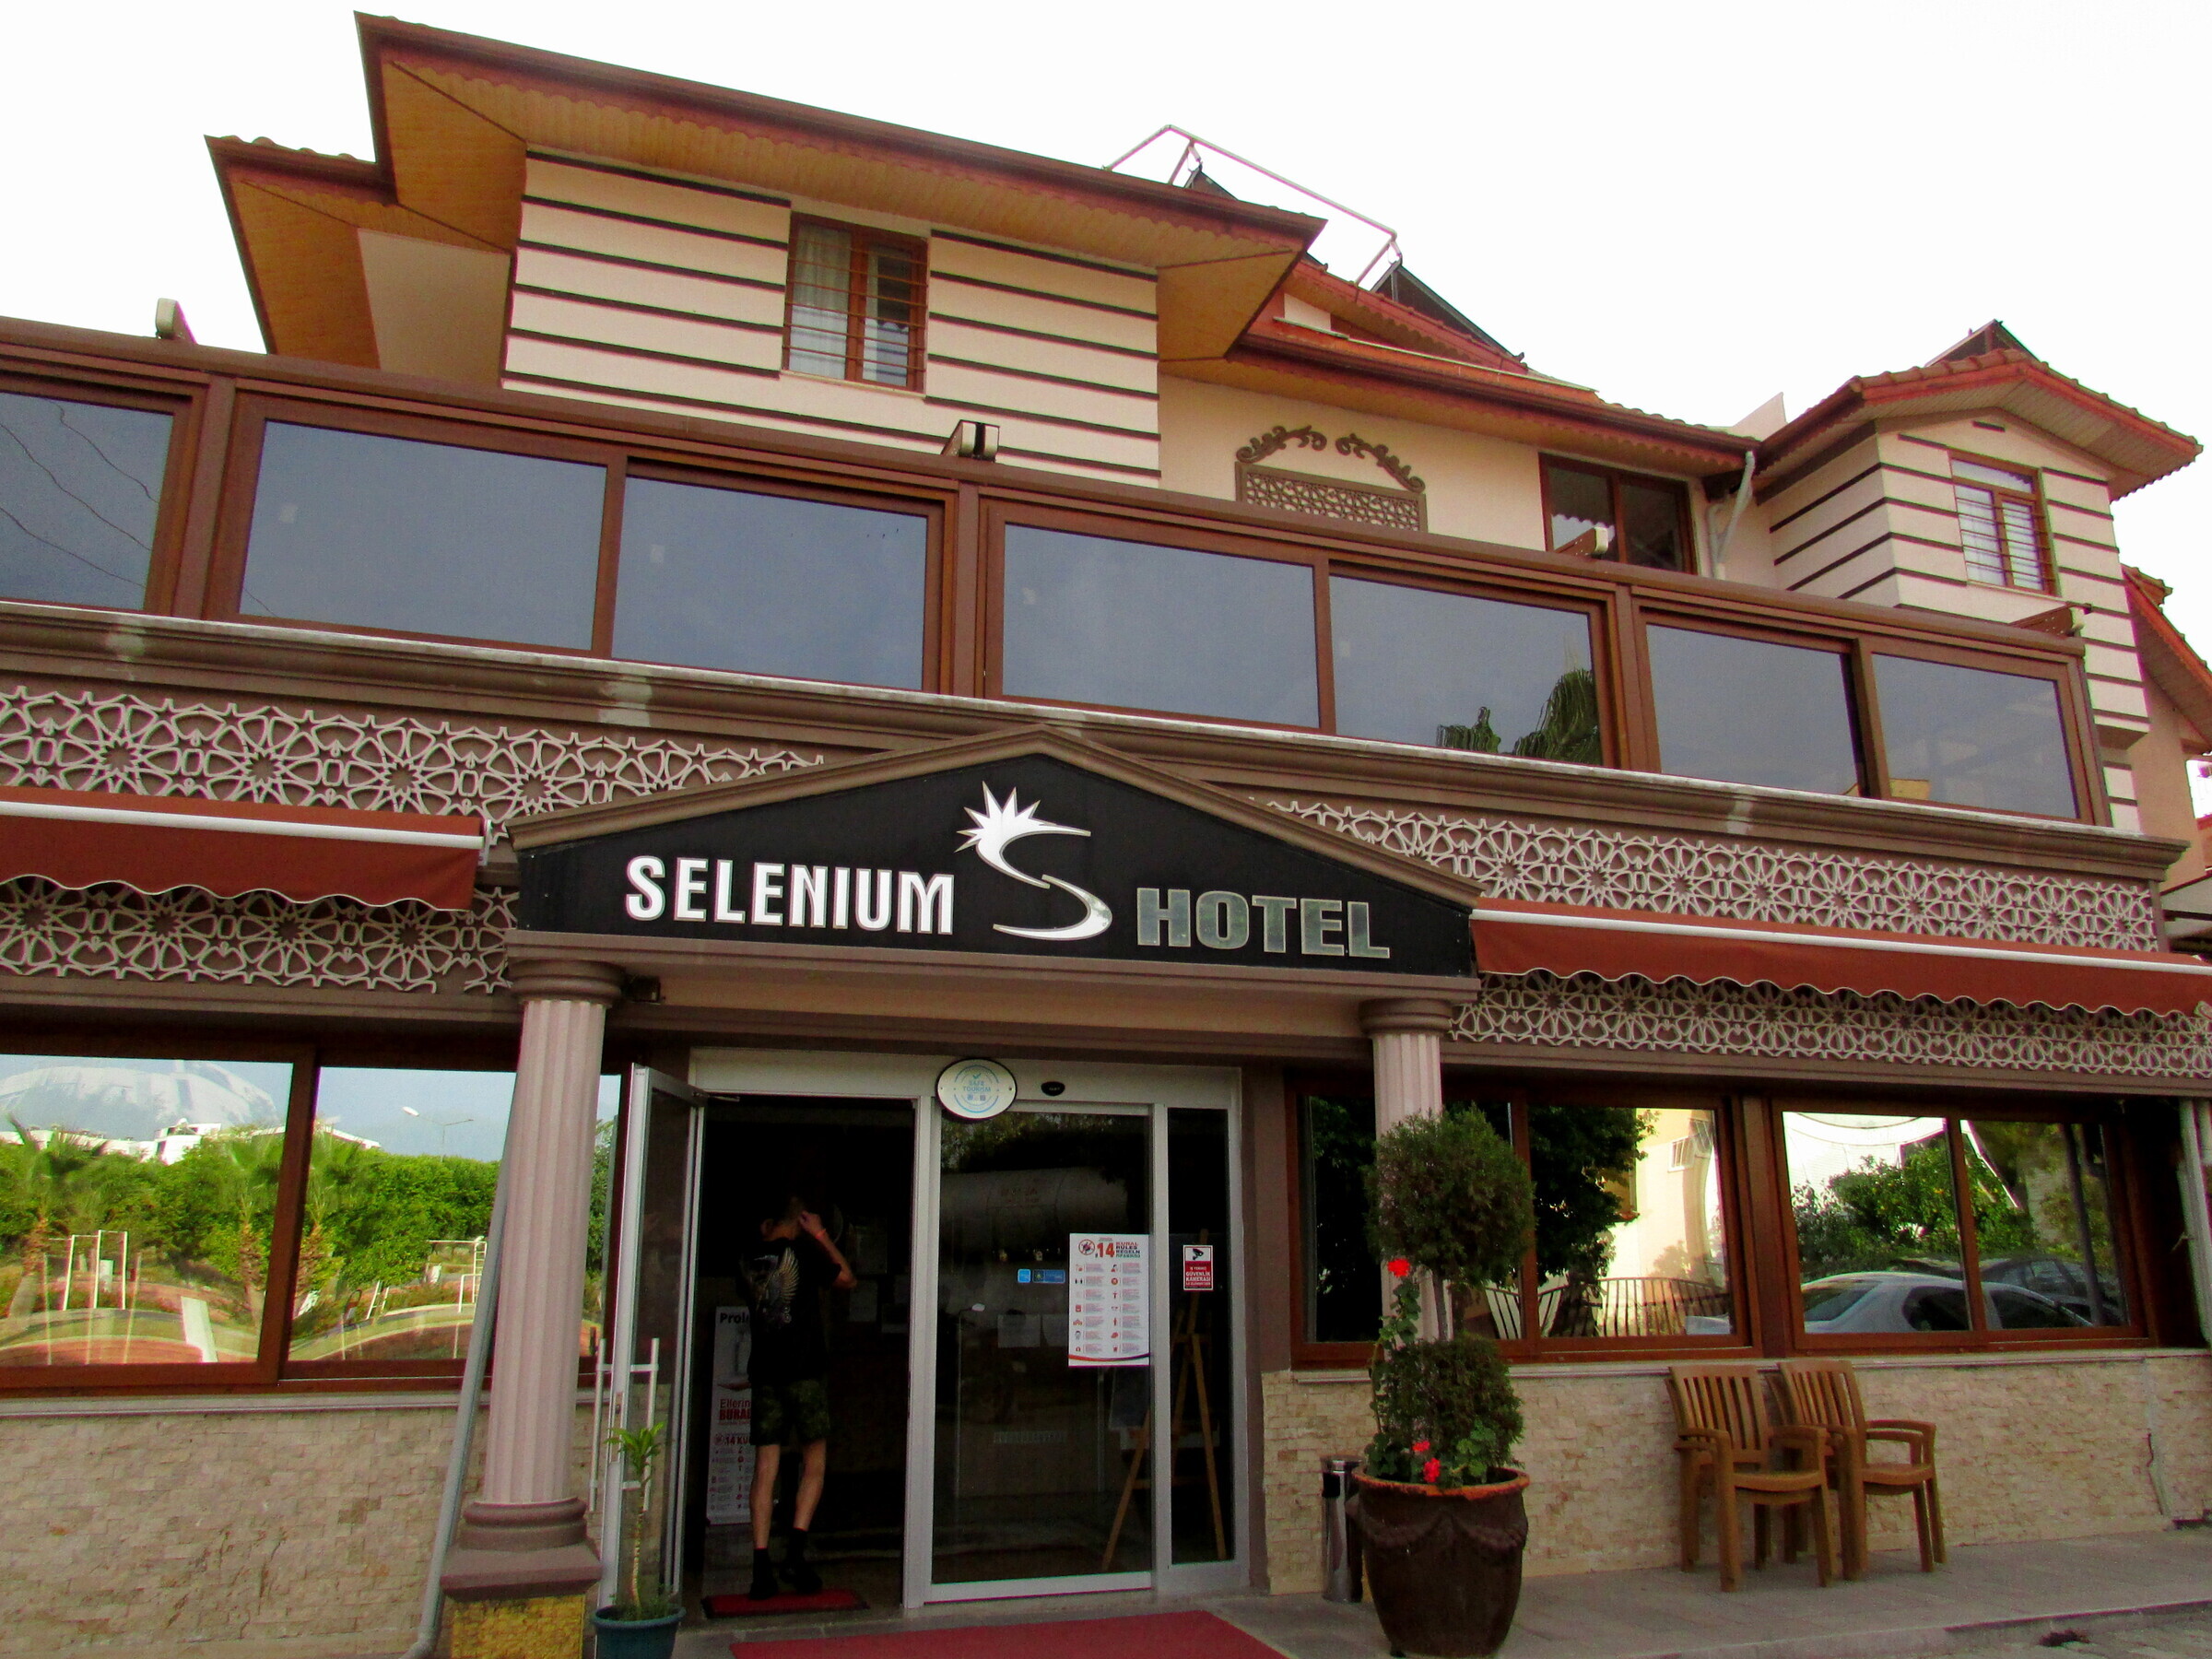 Селен отдых. Отель Selenium Сиде. Селениум Турция отель Сиде. Сиде / Side Selenium Hotel 4*. Selenium Hotel 3*.